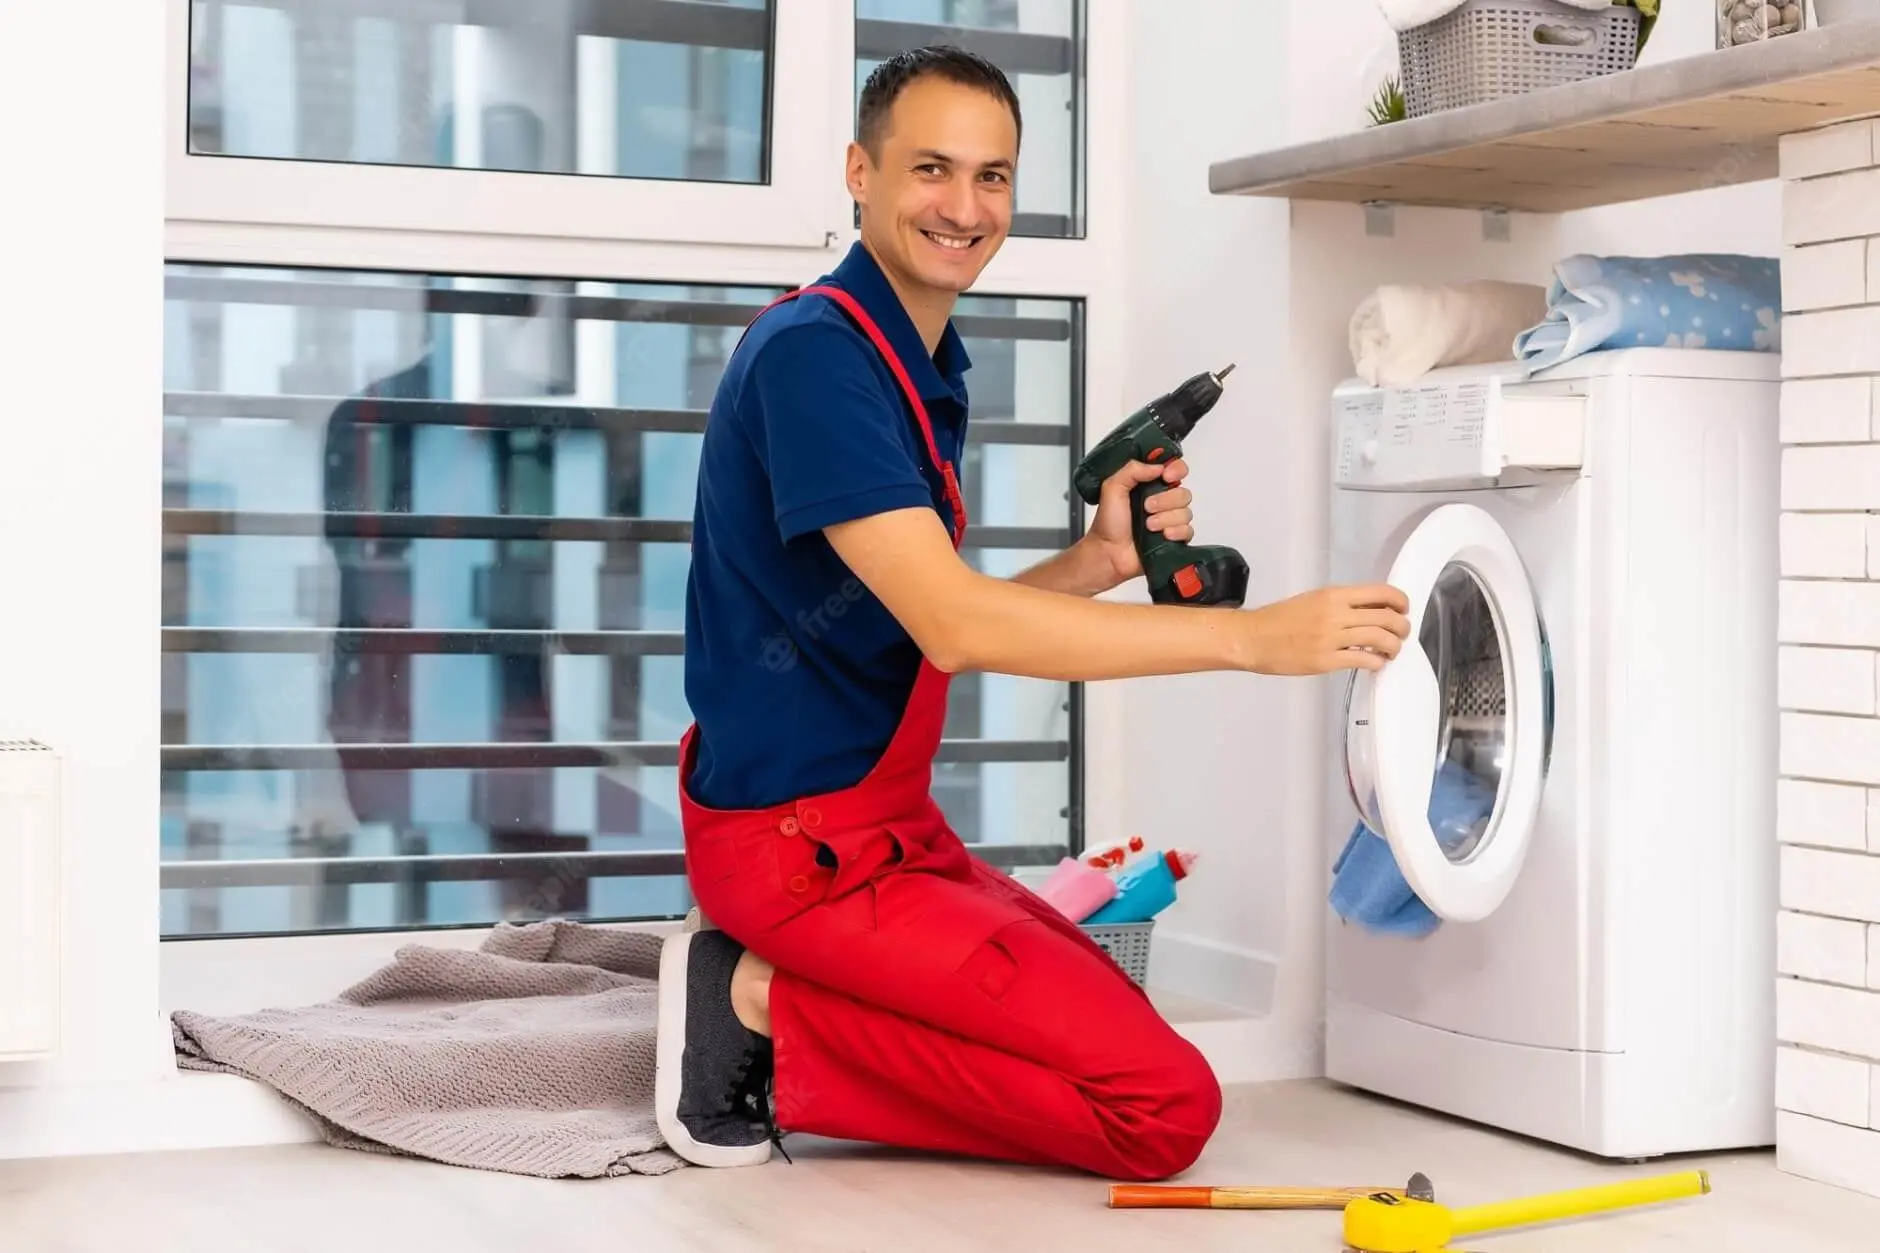 persona que arregla lavadoras - Qué hace un reparador